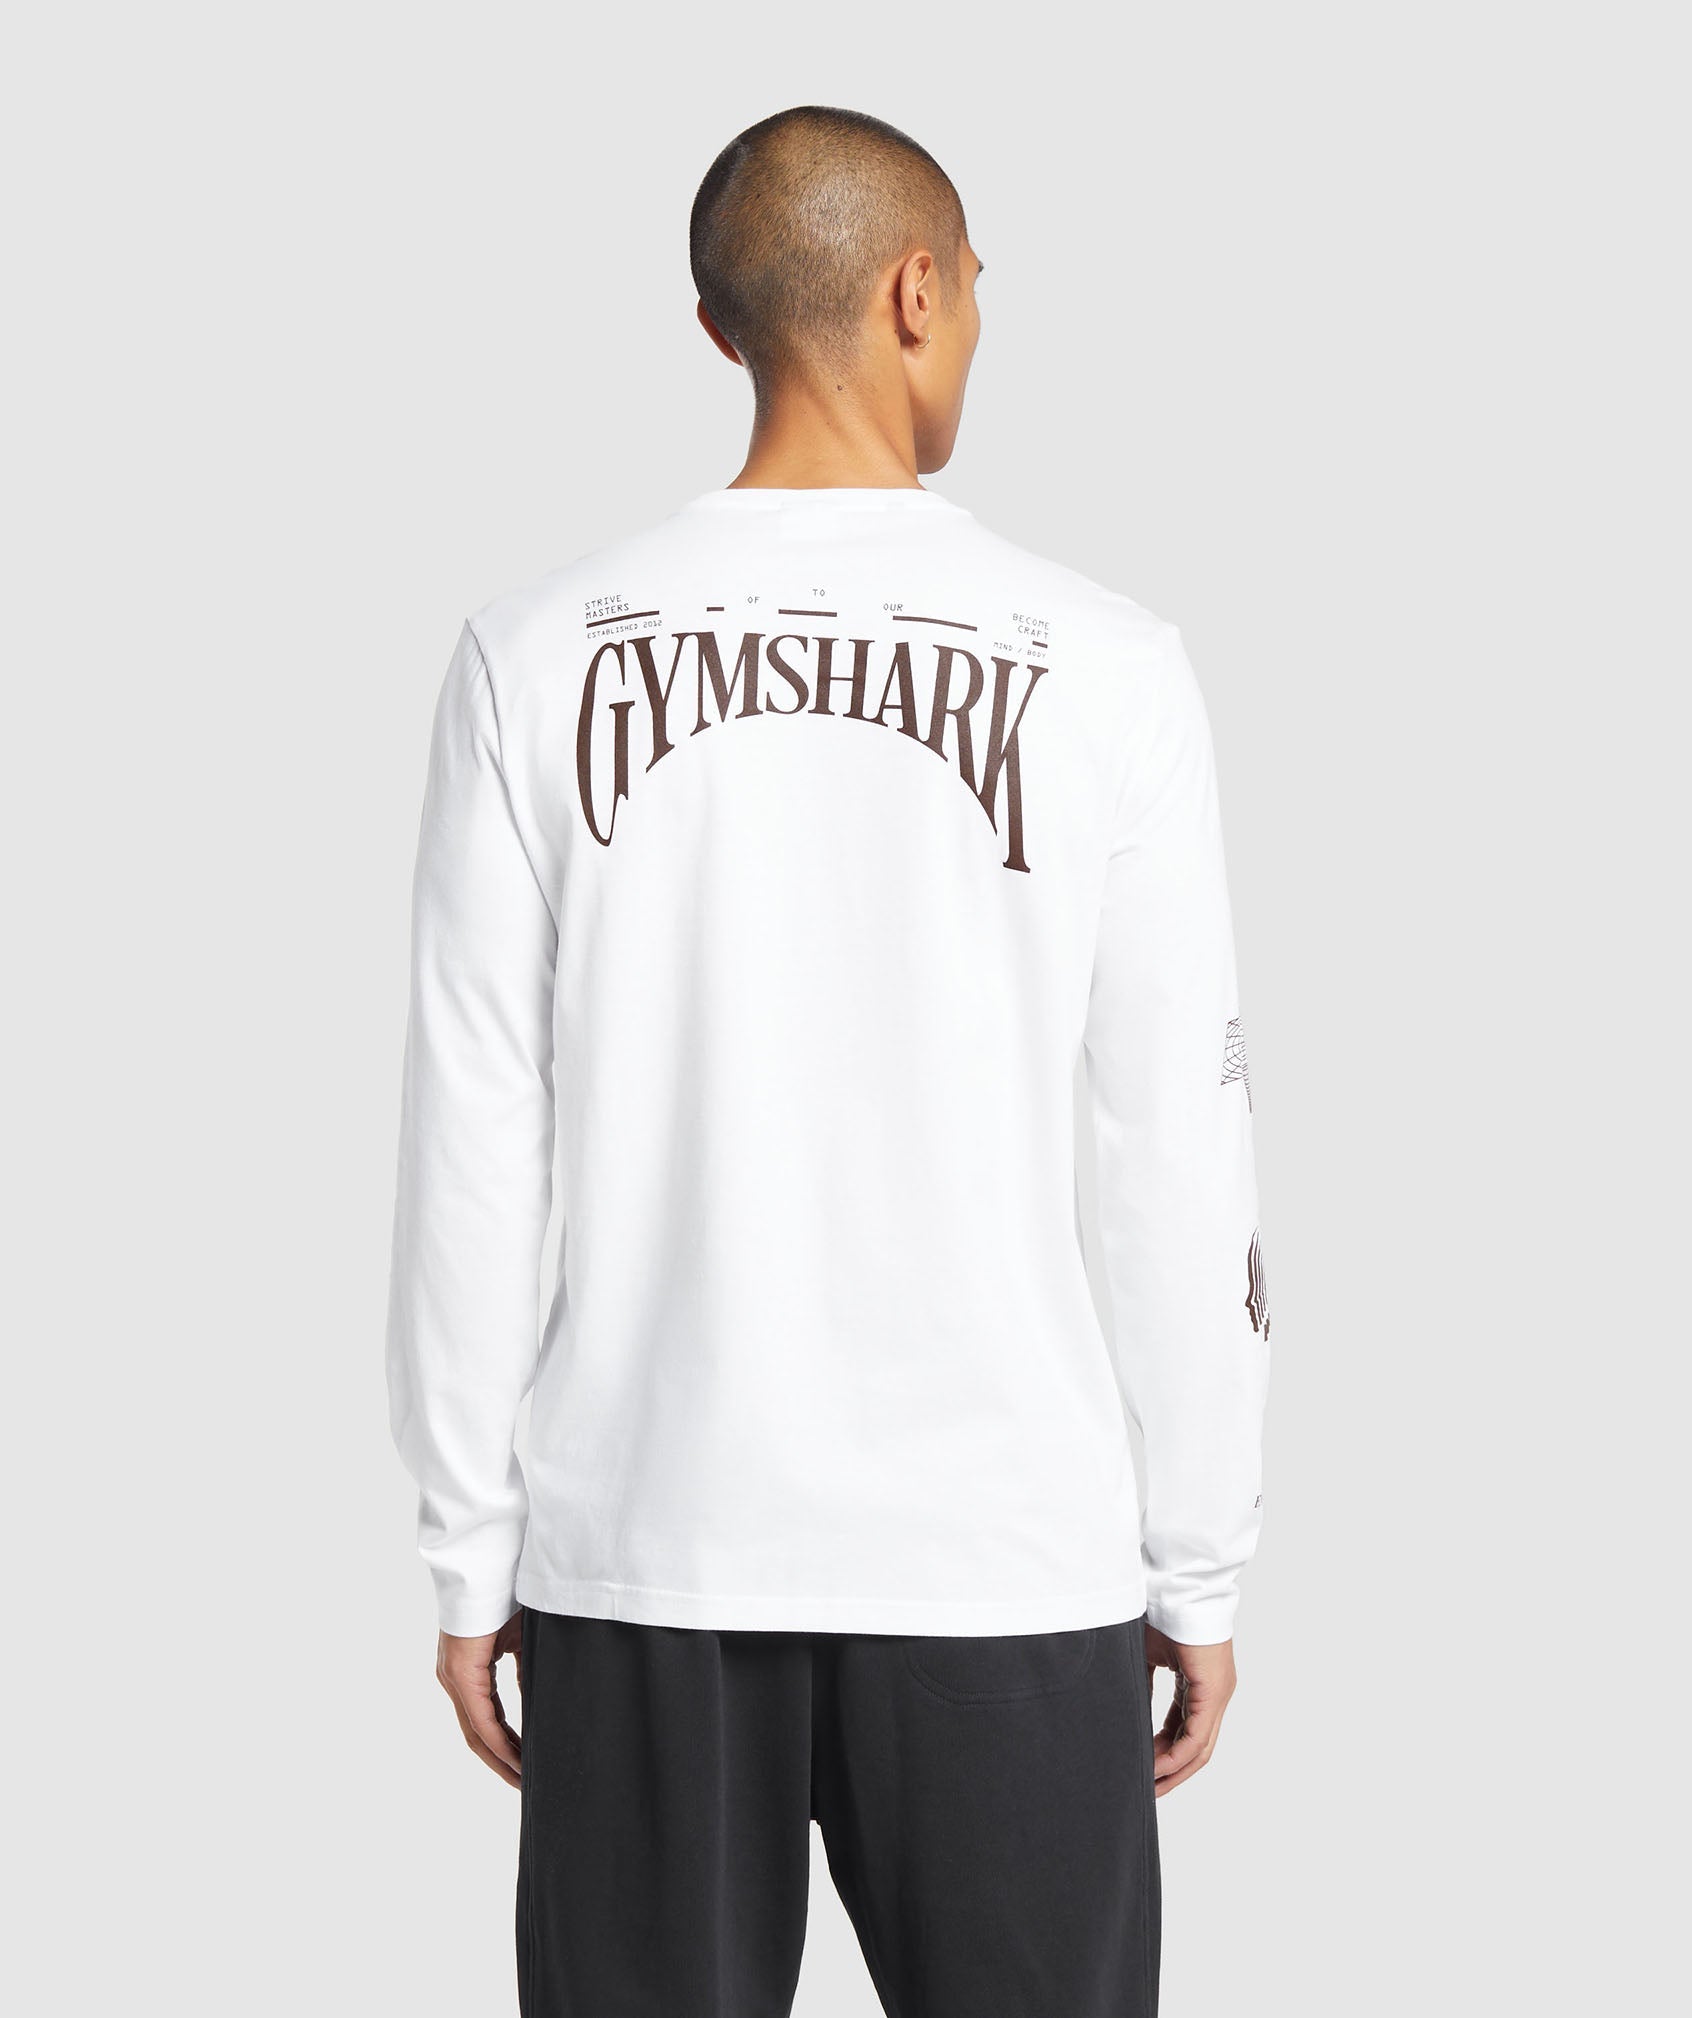 Gymshark Hybrid Wellness Long Sleeve T-Shirt - White